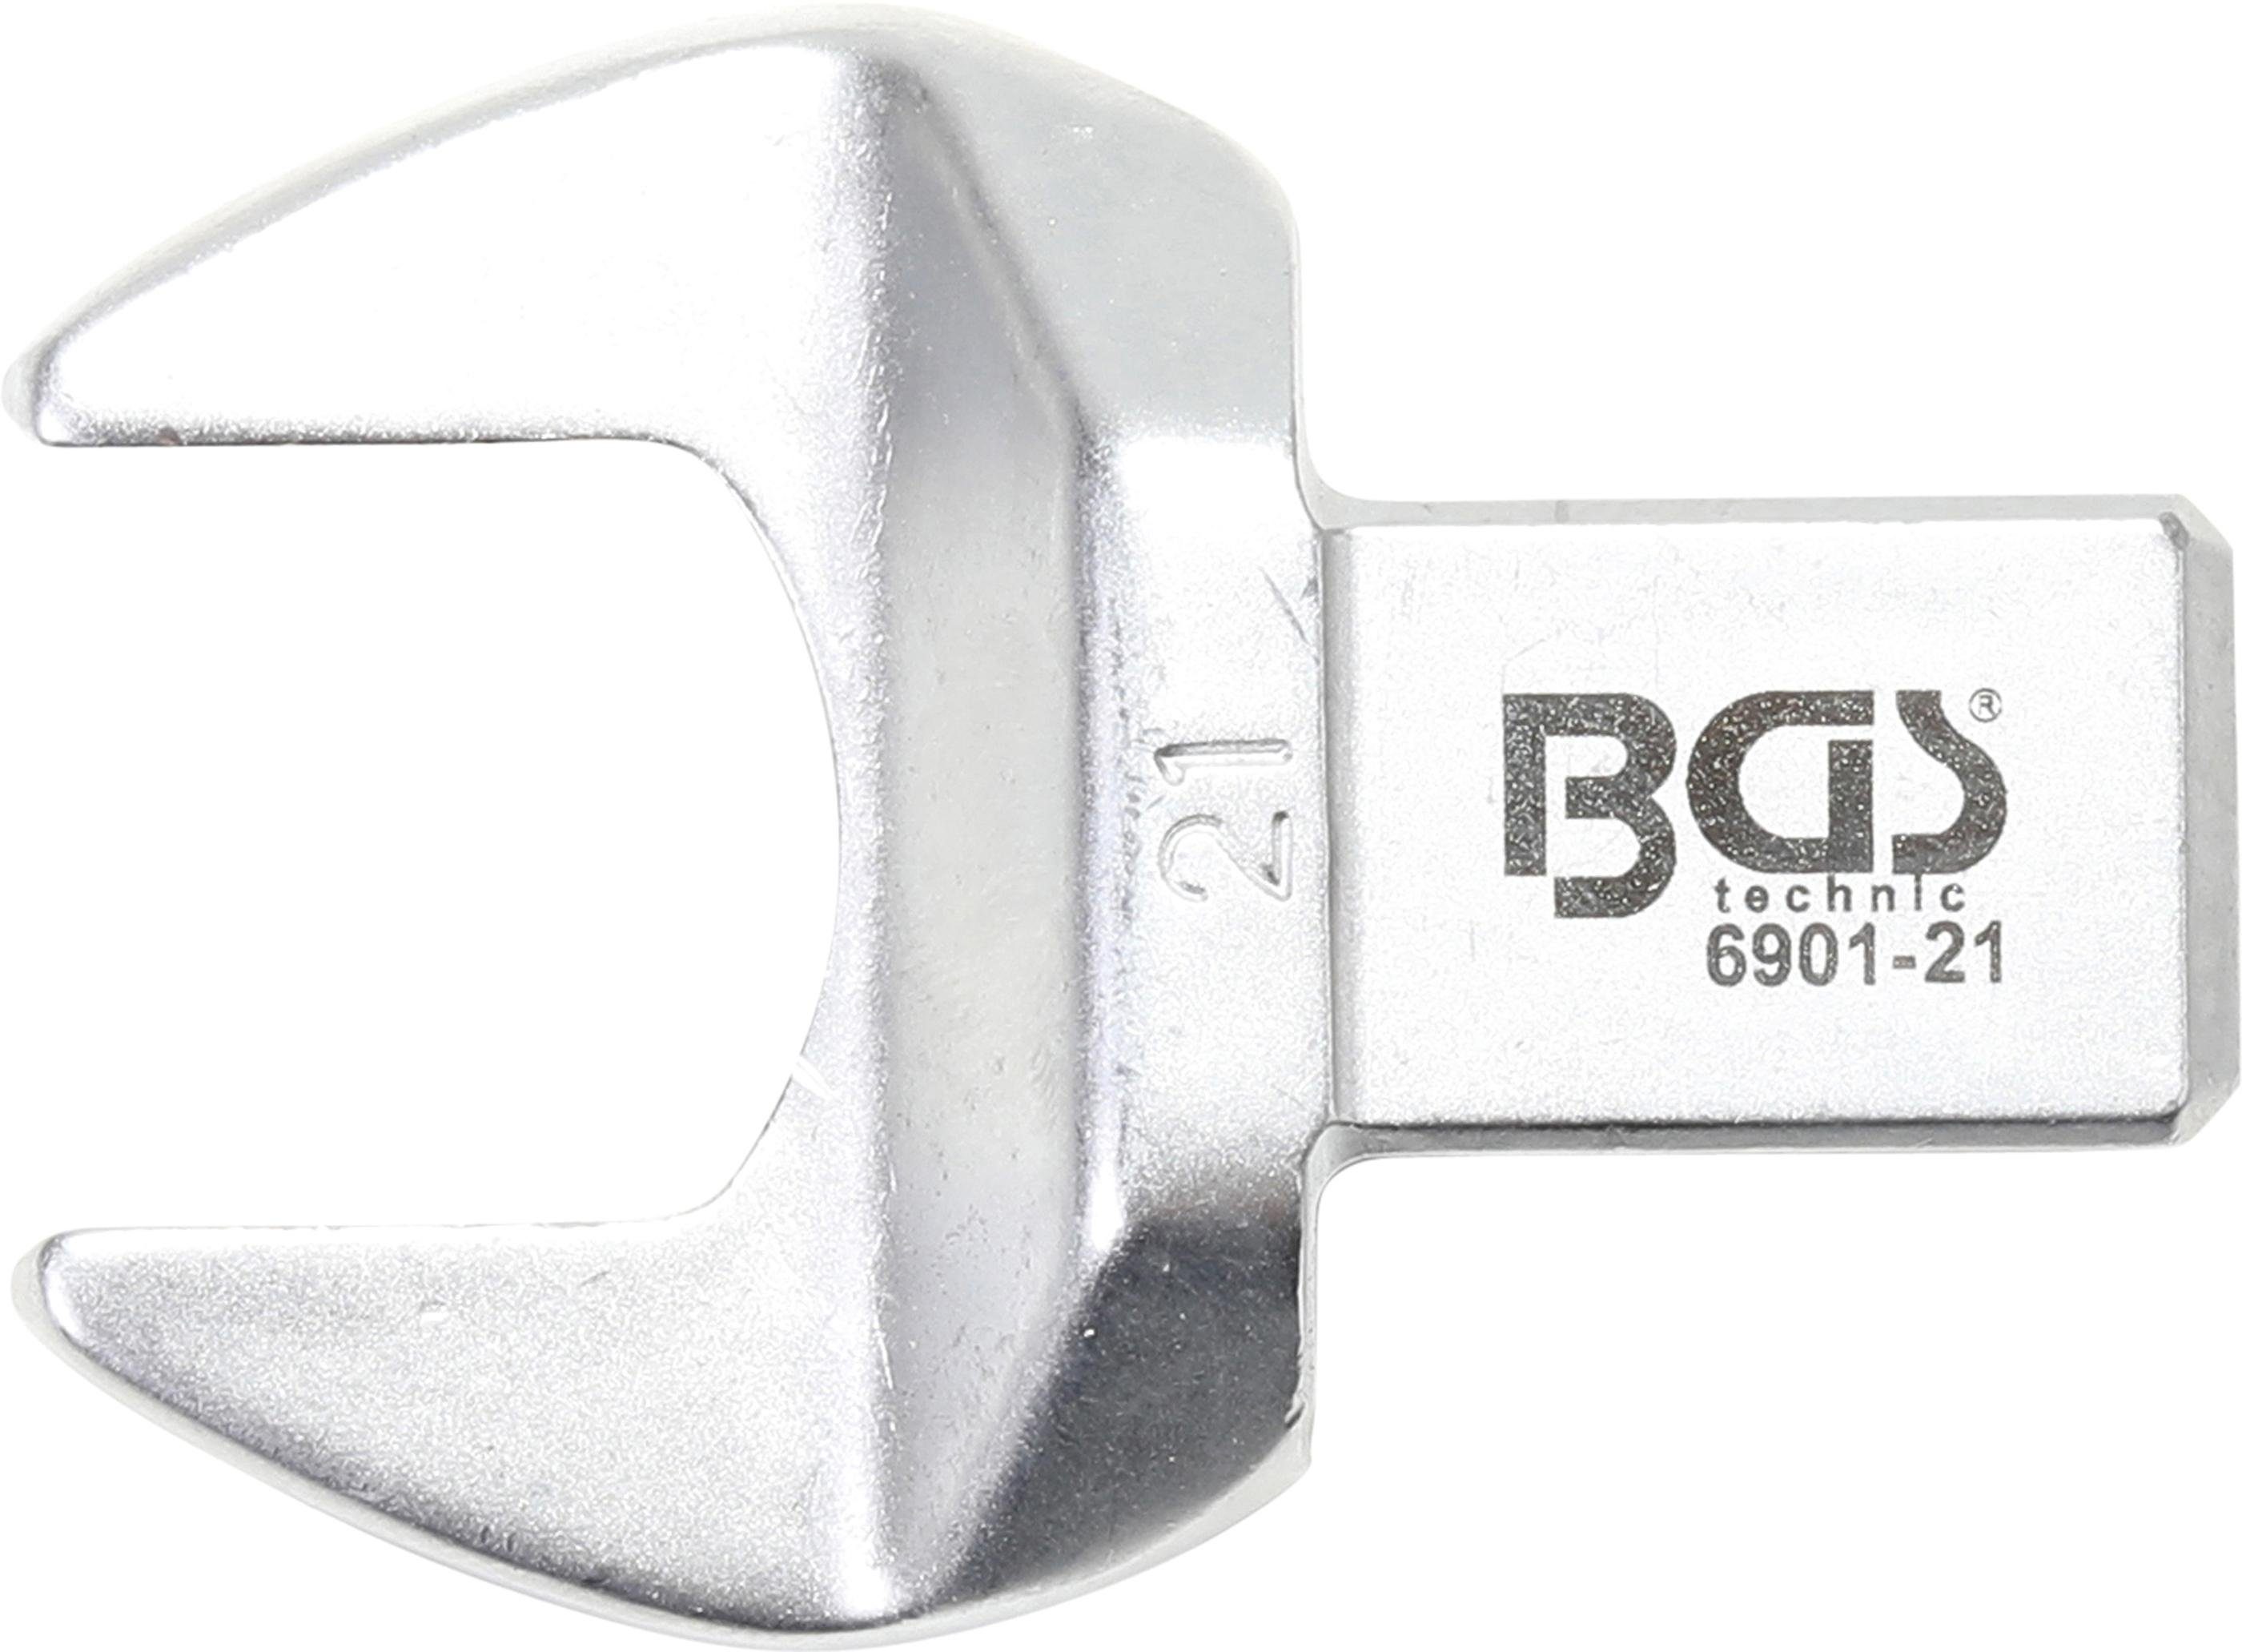 BGS technic Ausstechform Einsteck-Maulschlüssel, 21 mm, Aufnahme 14 x 18 mm | Ausstechformen